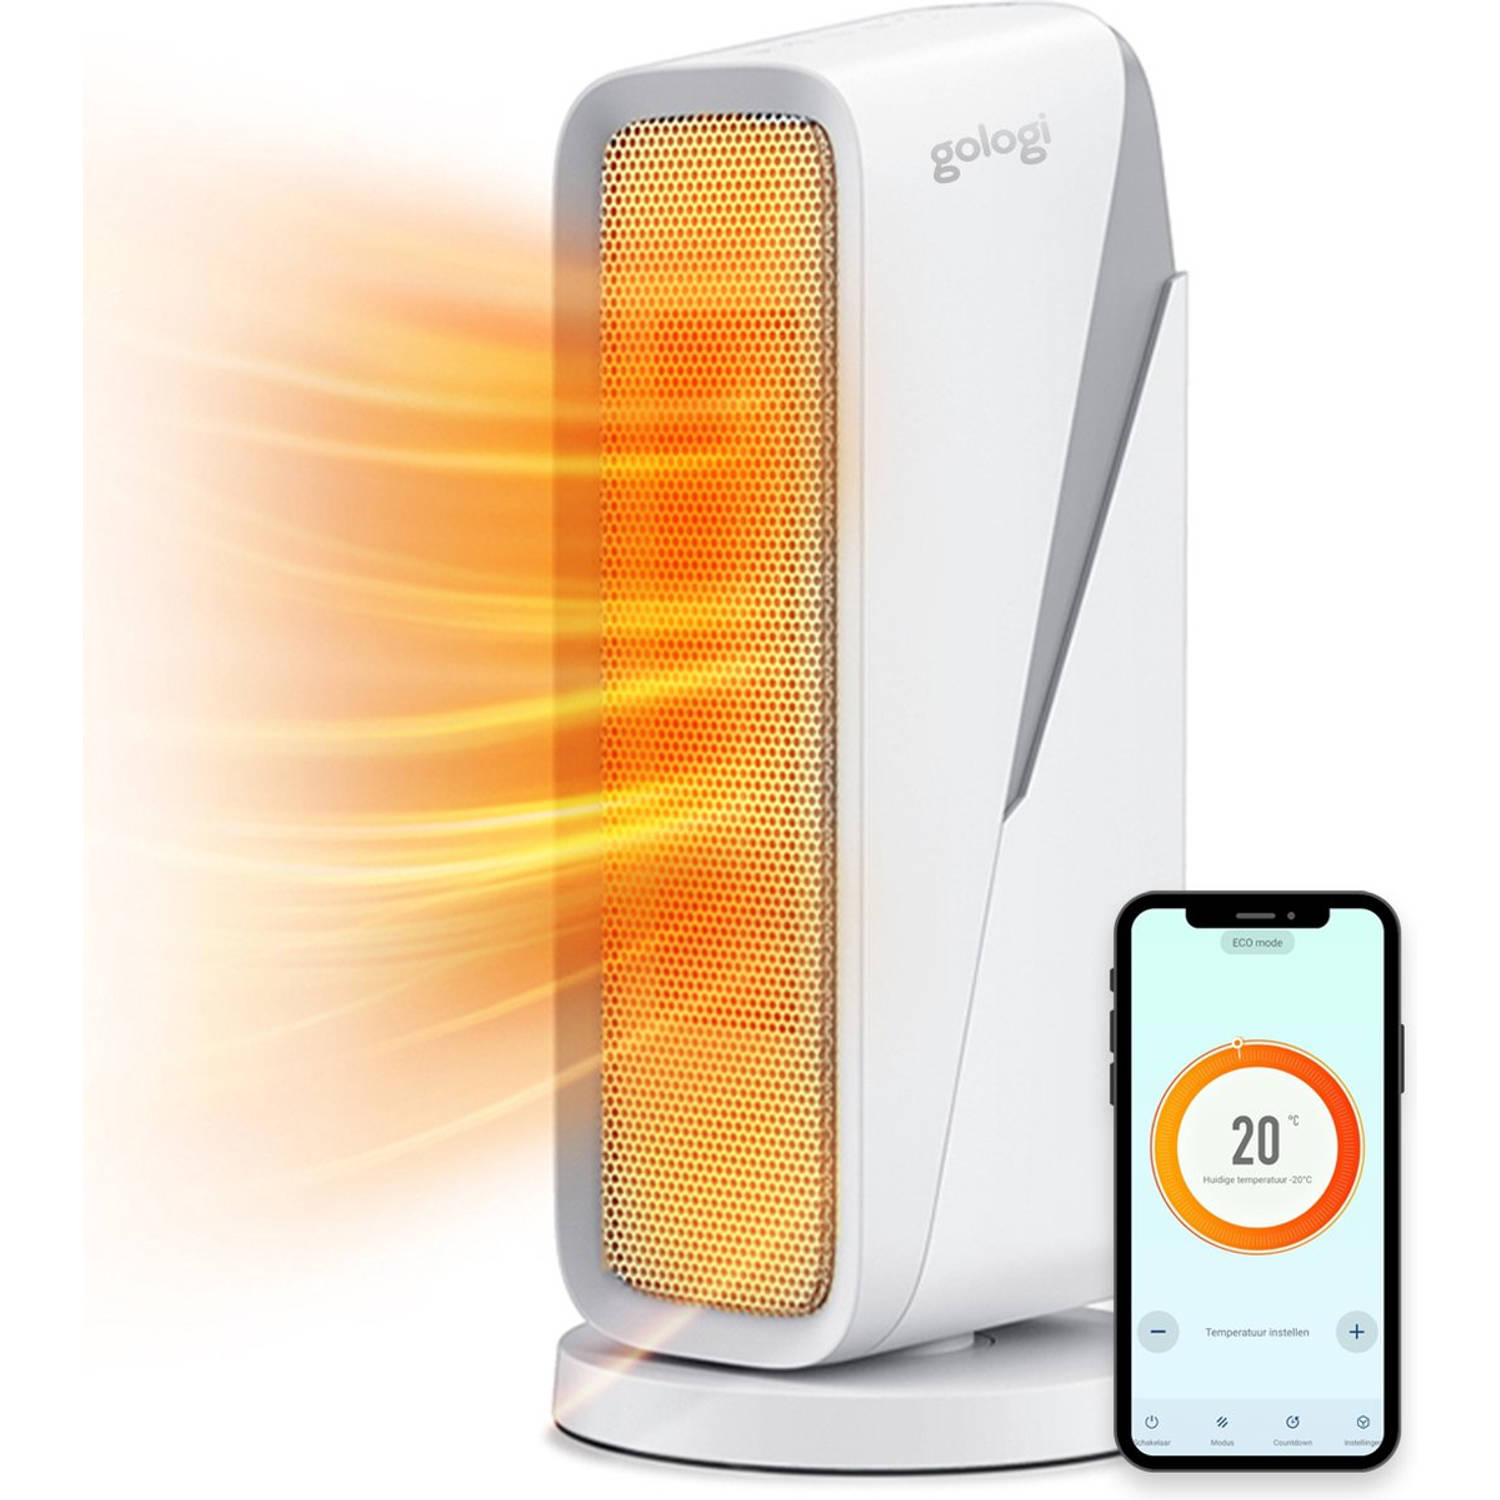 Gologi ventilatorkachel met thermostaat - Kachel elektrisch - Verwarming - Heater - Werkt met app en touch bediening - 1500W